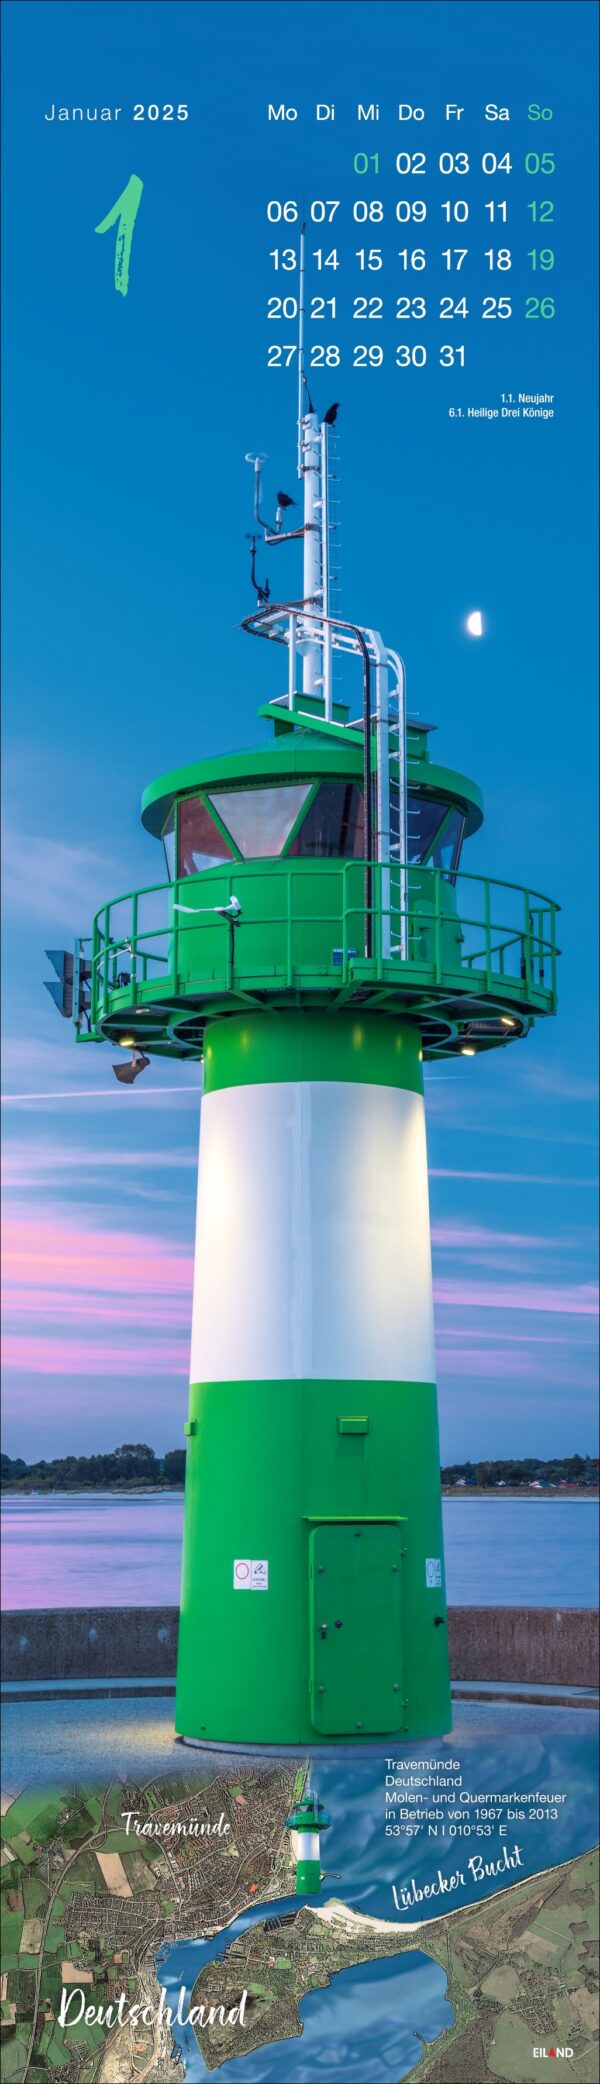 2025 LongEiland - Kalender mit einem vertikalen Bild eines weißen und grünen Leuchtturms auf LongEiland mit einem mondbeschienenen Himmel und ruhiger See im Hintergrund. Die Wochentage sind auf Deutsch, Mo bis So